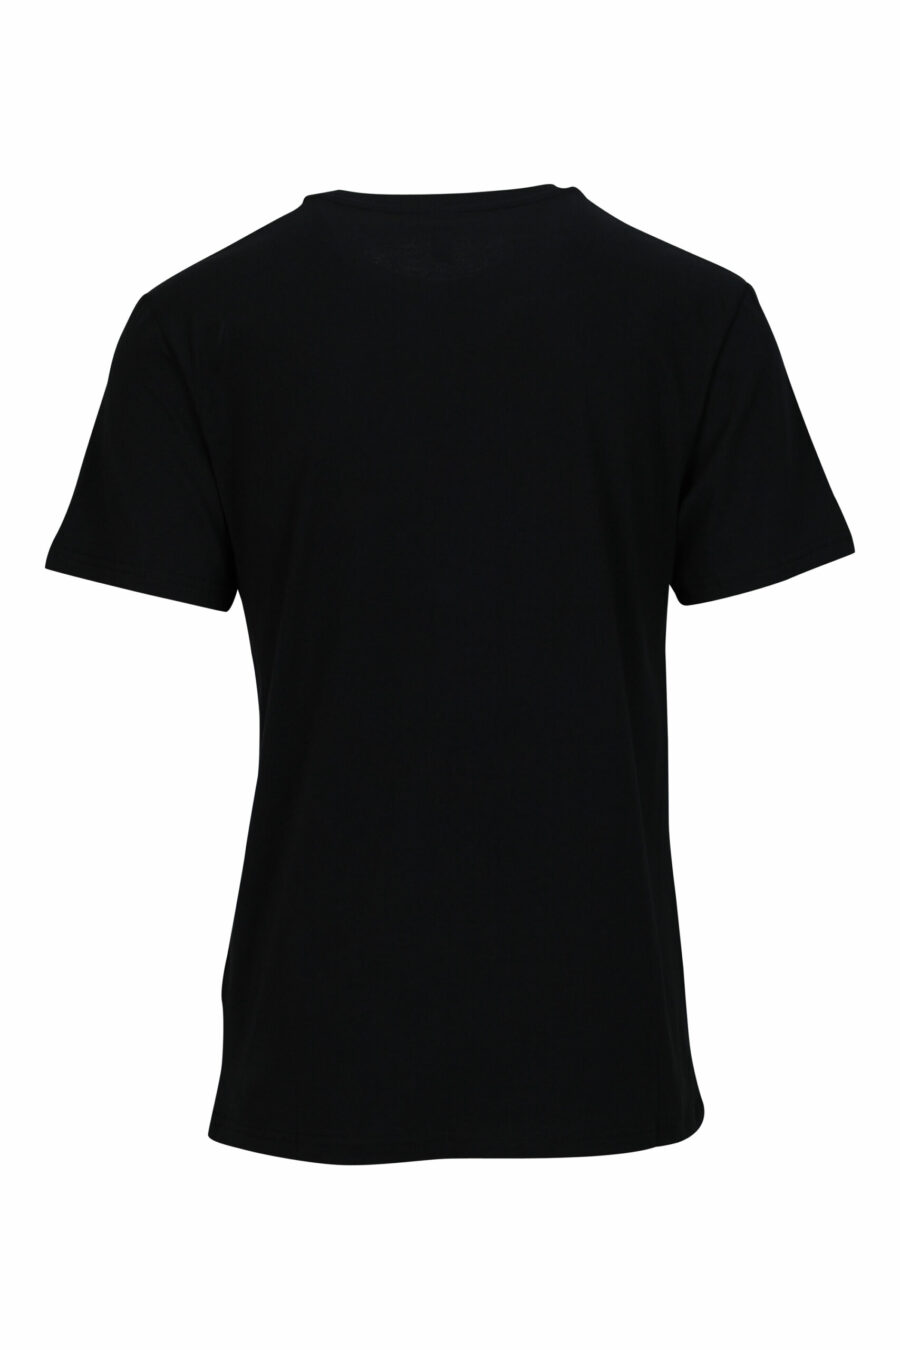 T-shirt preta com minilogo dourado "swim" - 667113673073 1 scaled